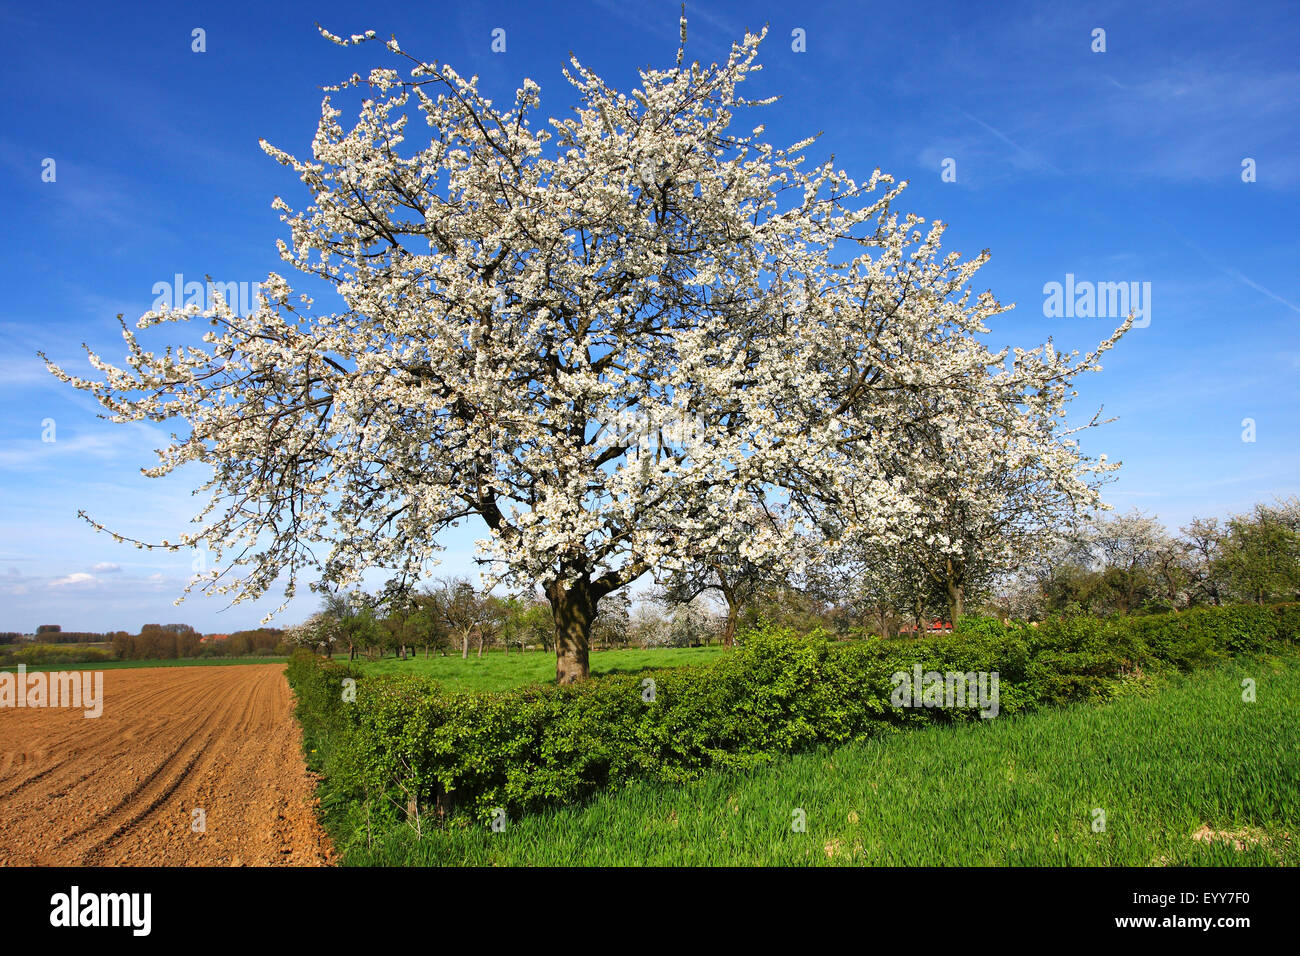 Cherry tree, Sweet cherry (Prunus avium), flowering cherry tree in field scenery, Belgium, Ardennes Stock Photo